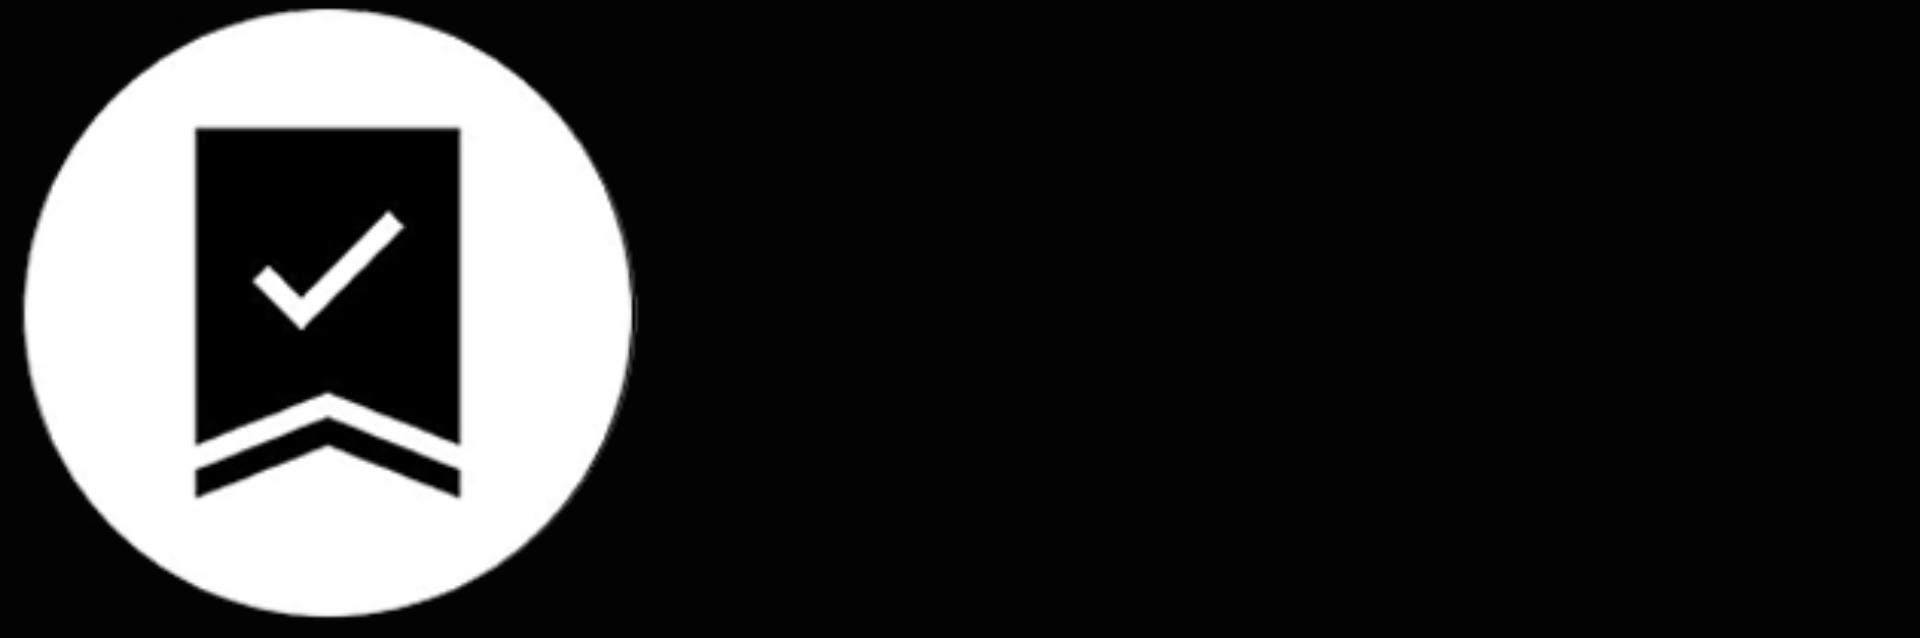 Černobílá ikona záruky s číslem 2 nebo bez.